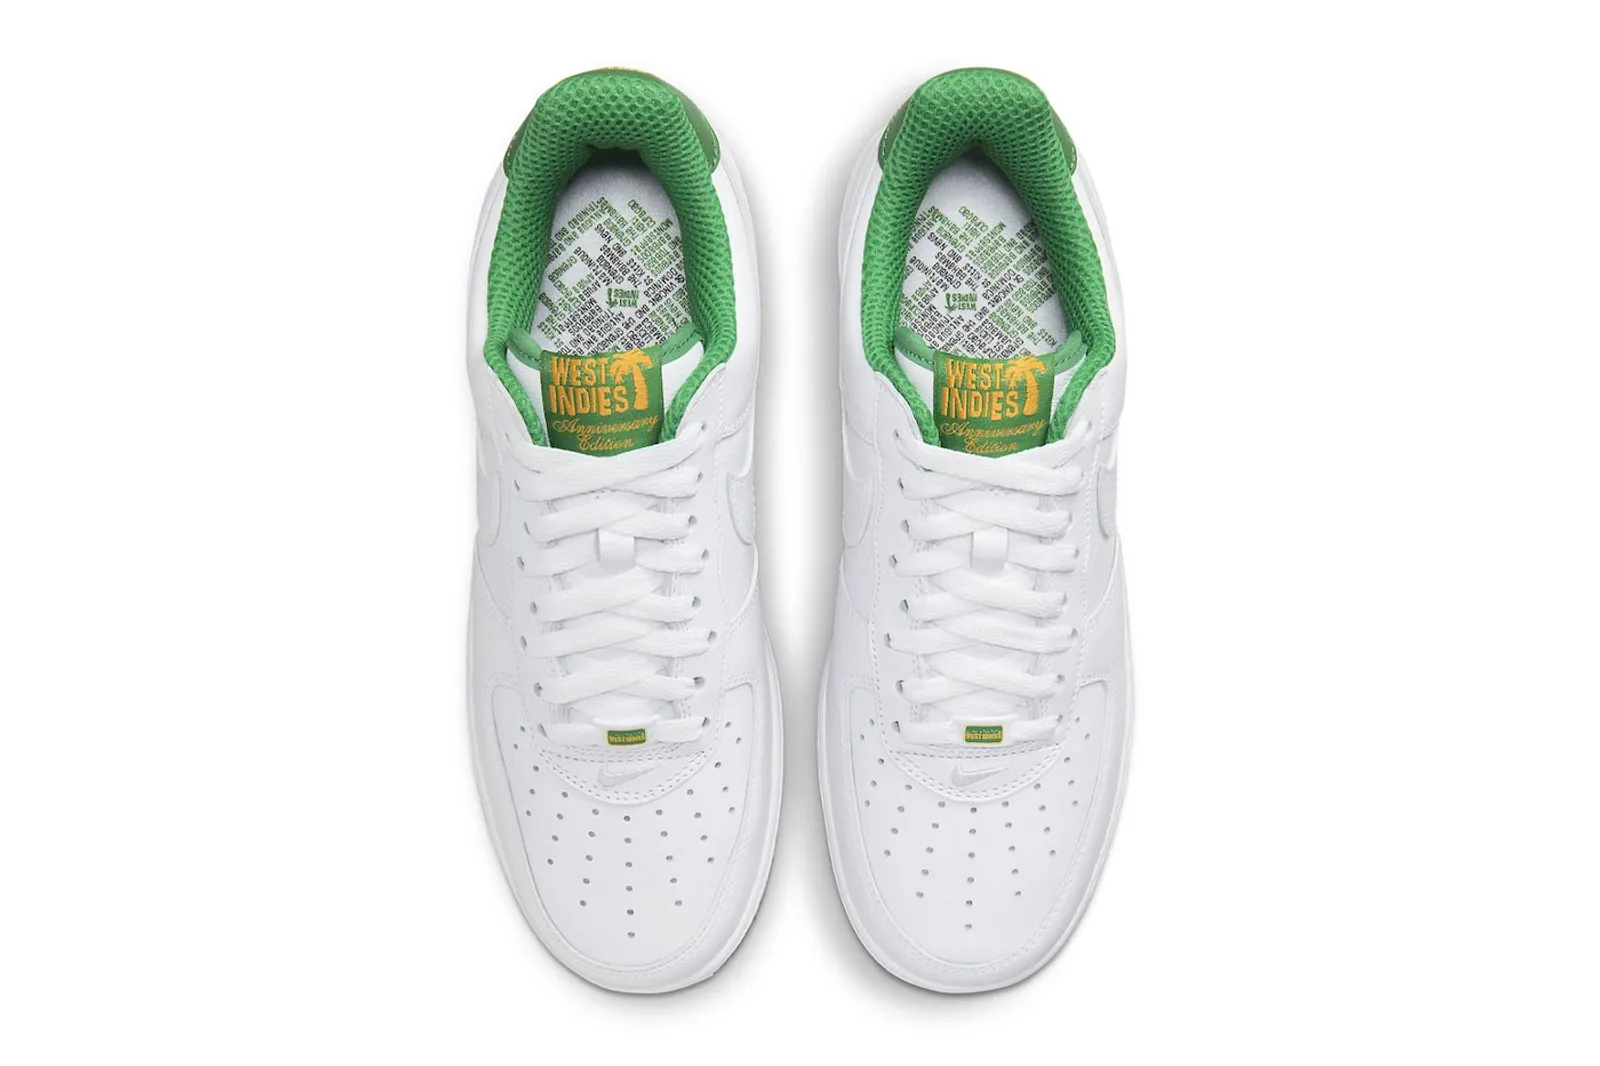 Nike Rilis Sneaker OG Air Force 1 Low 'West Indies'